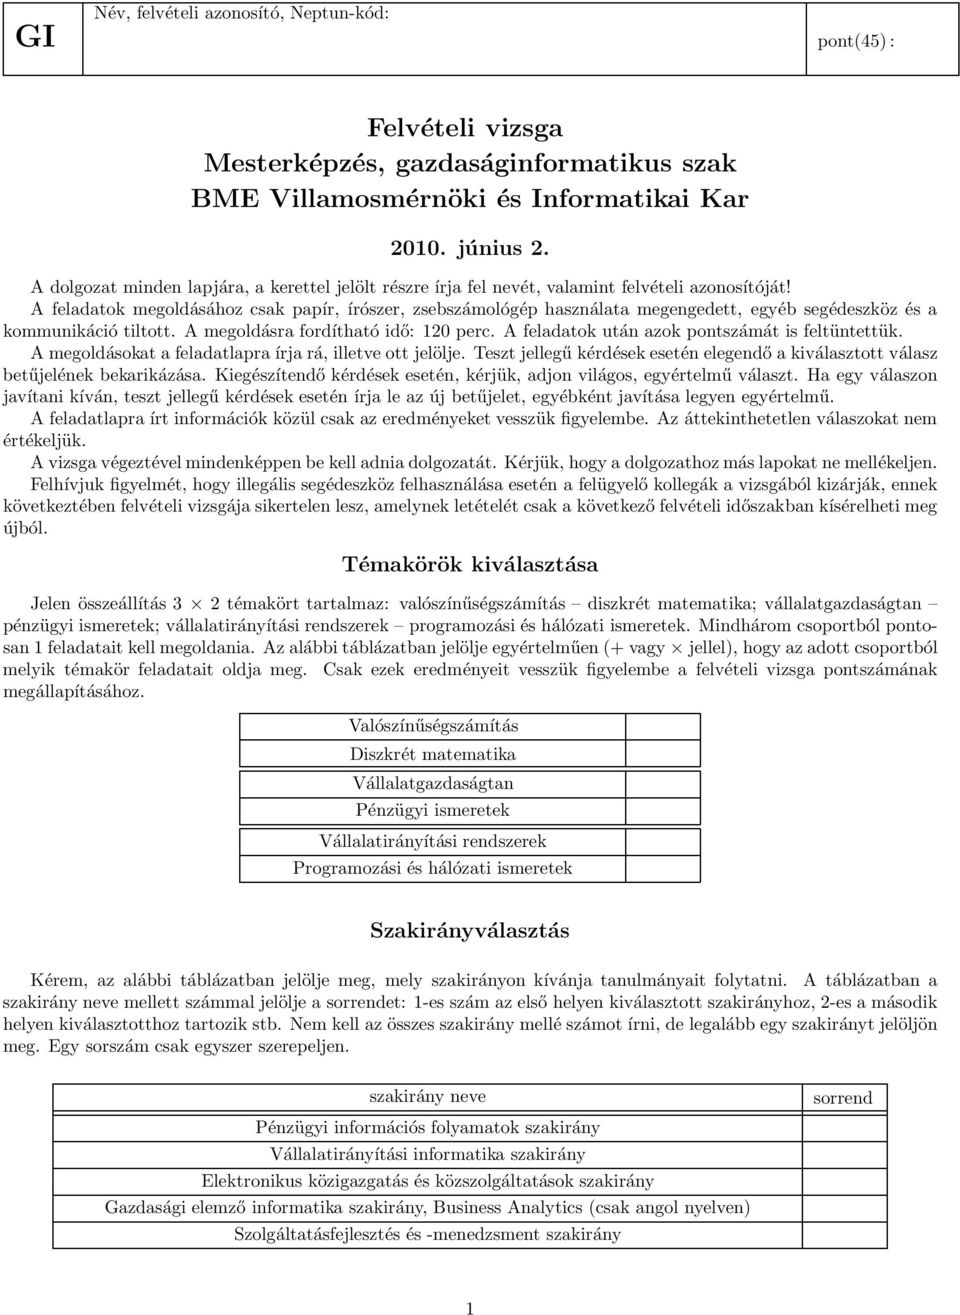 Felvételi vizsga Mesterképzés, gazdaságinformatikus szak BME  Villamosmérnöki és Informatikai Kar június 2. - PDF Ingyenes letöltés